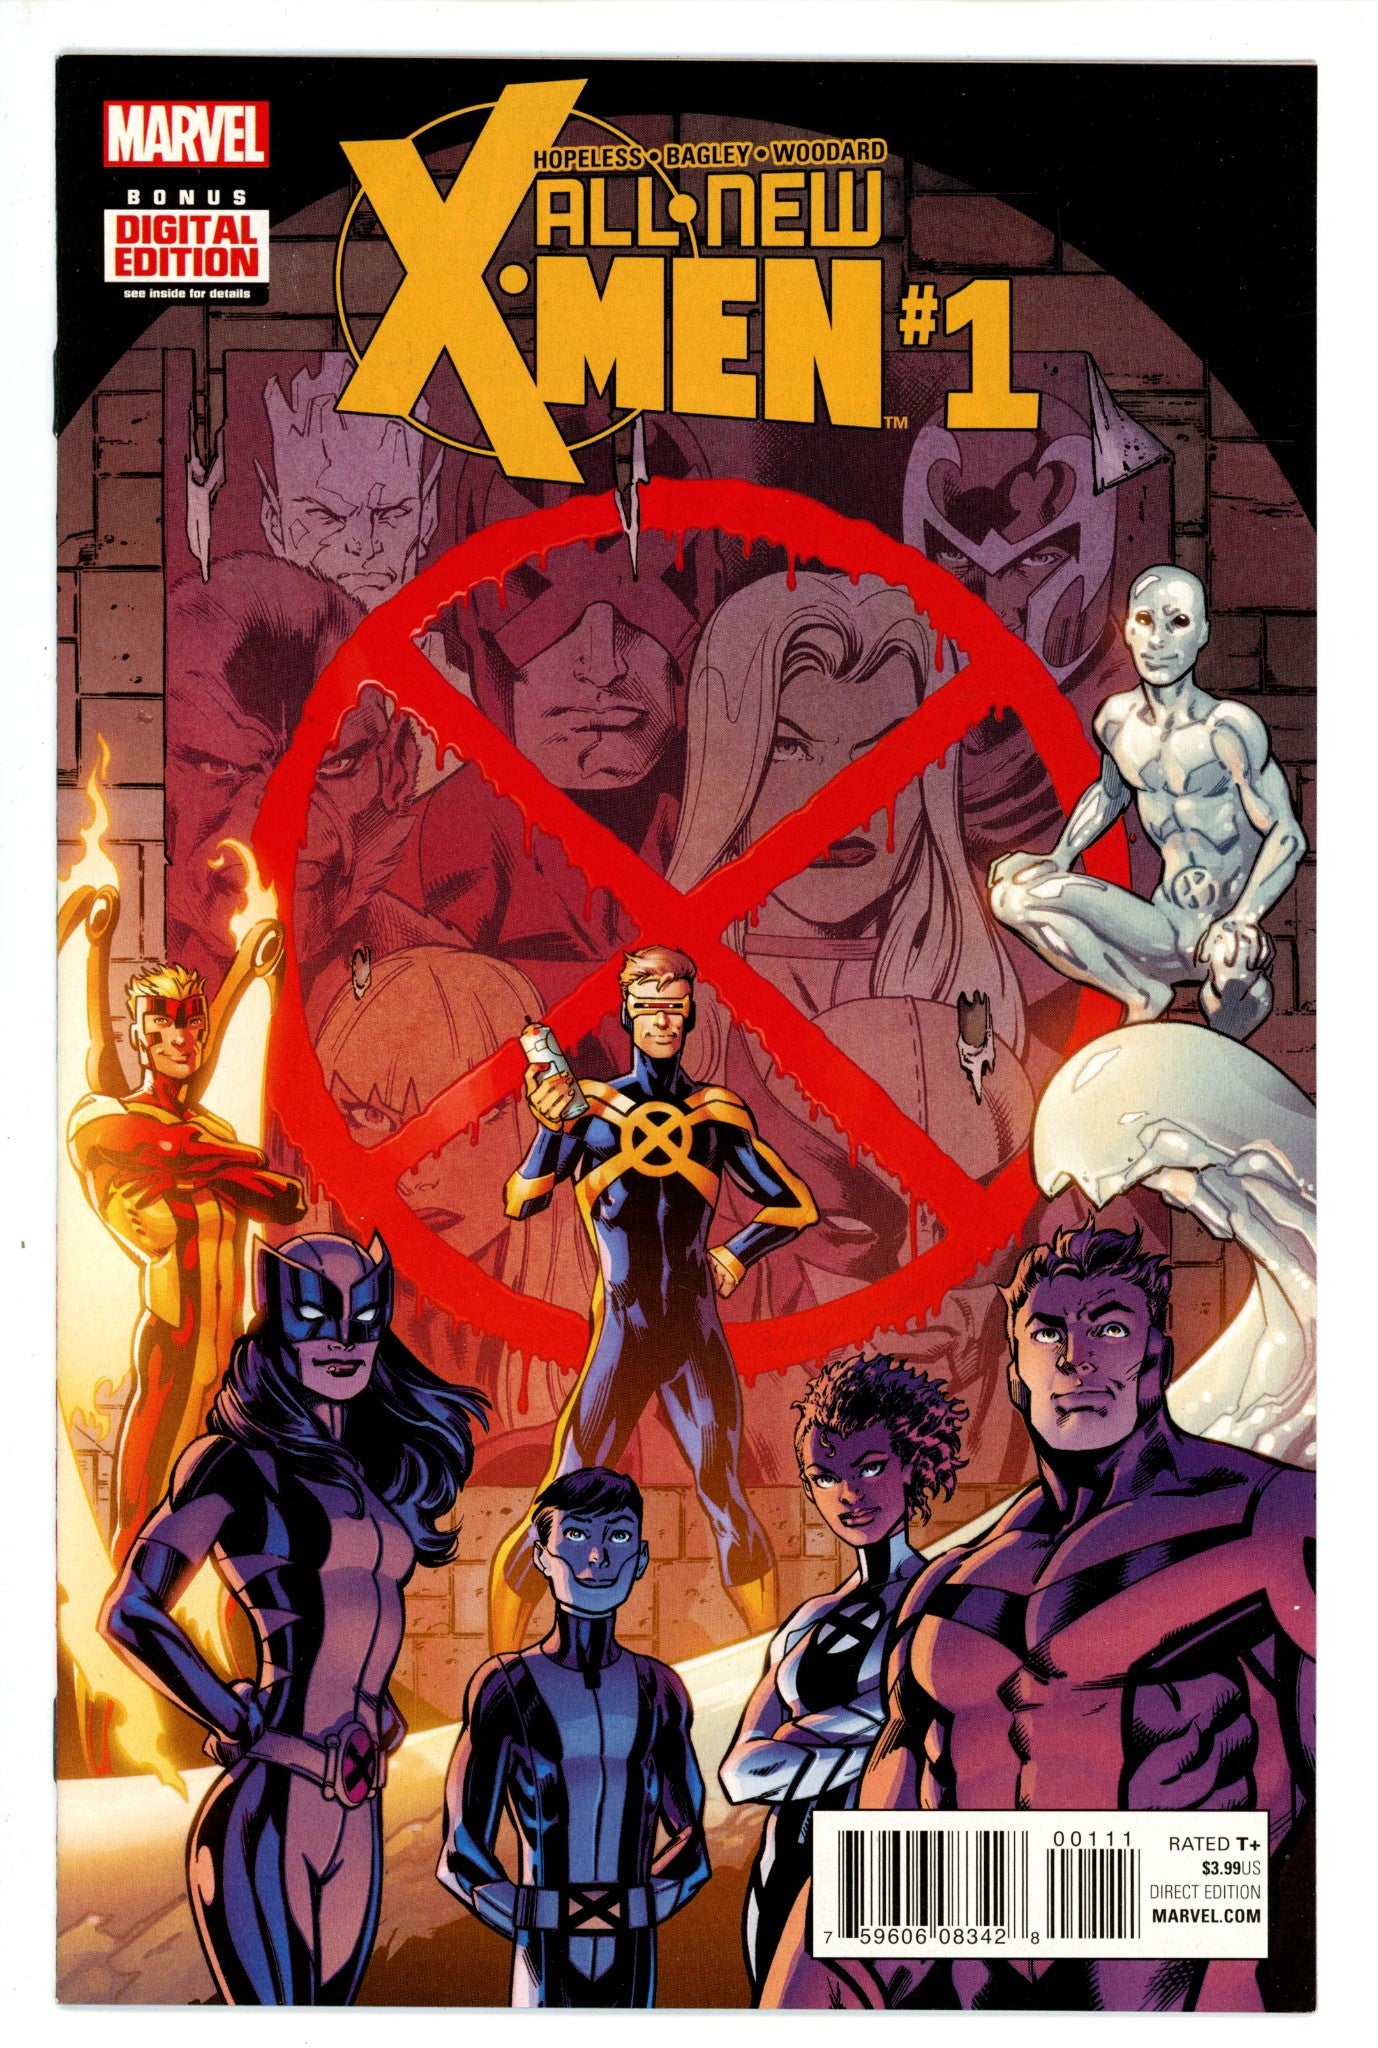 All-New X-Men Vol 2 1 (2015)